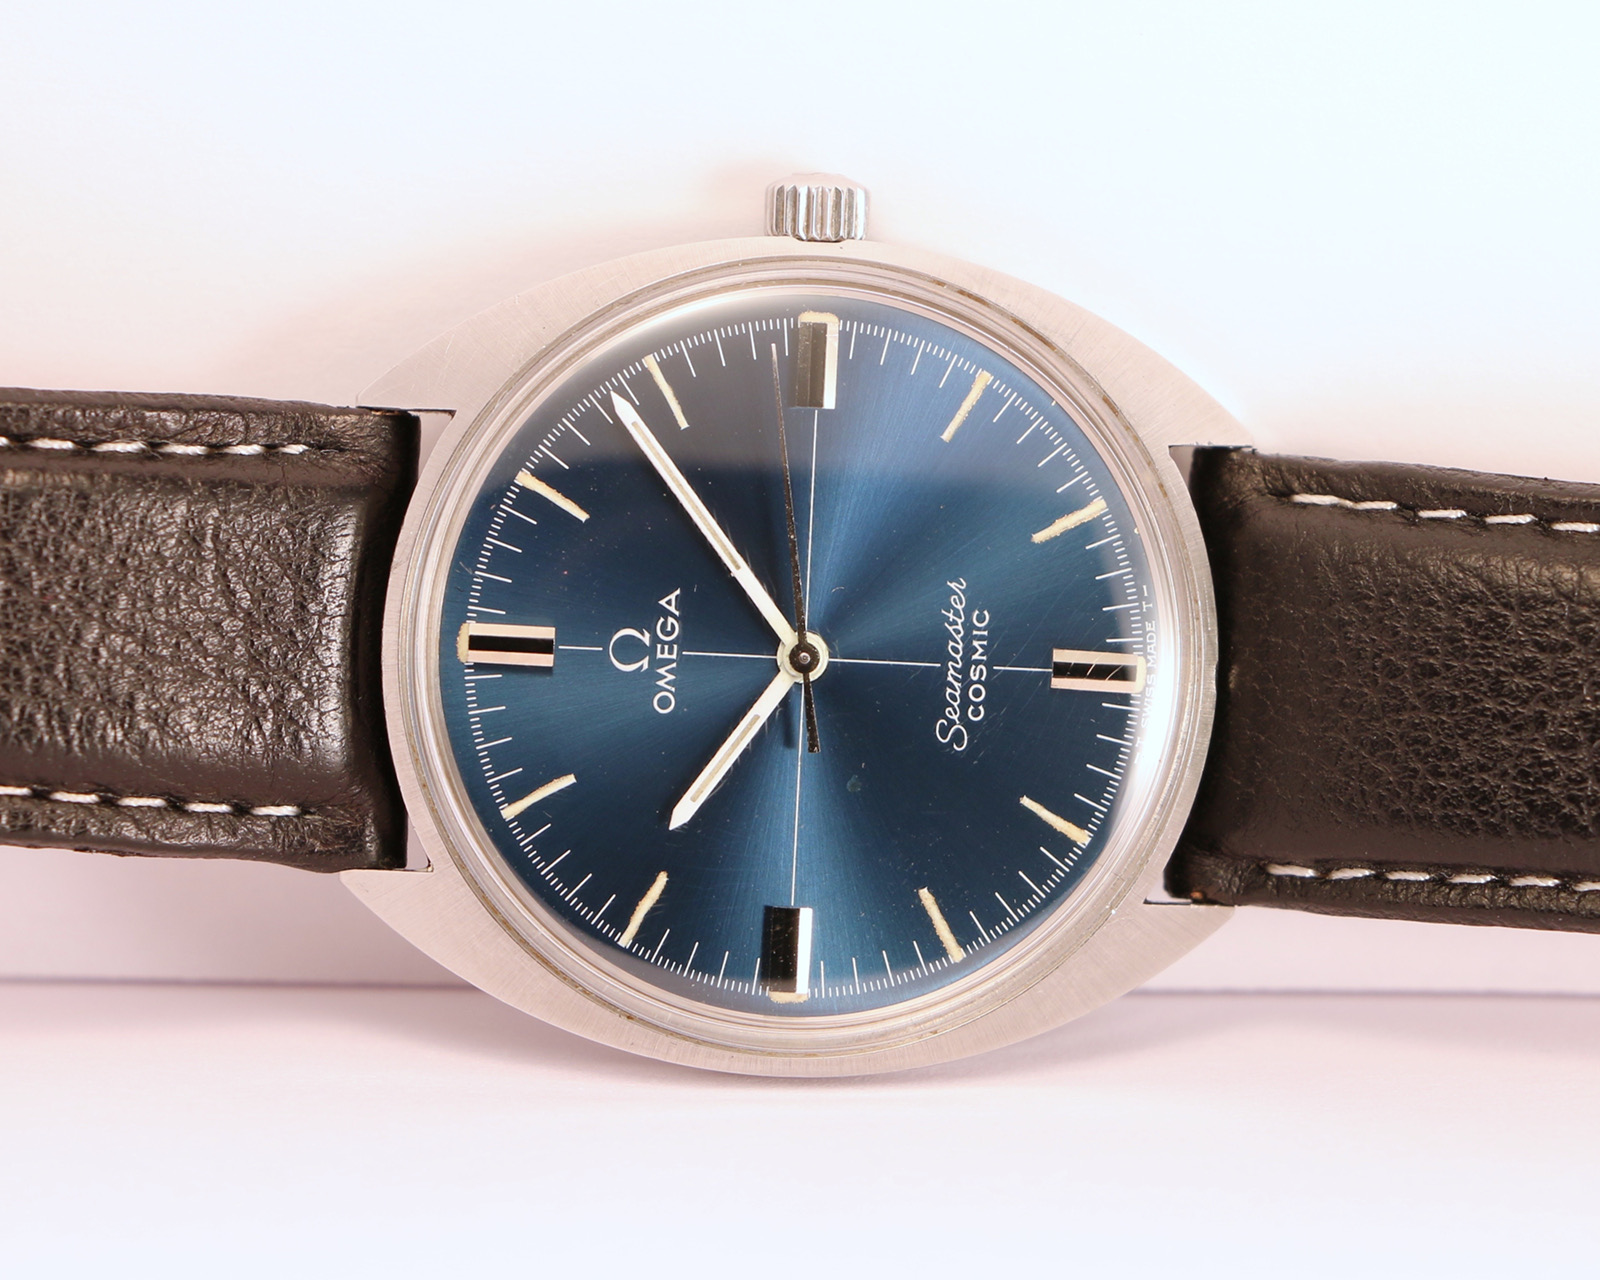 vintage omega seamaster blue dial